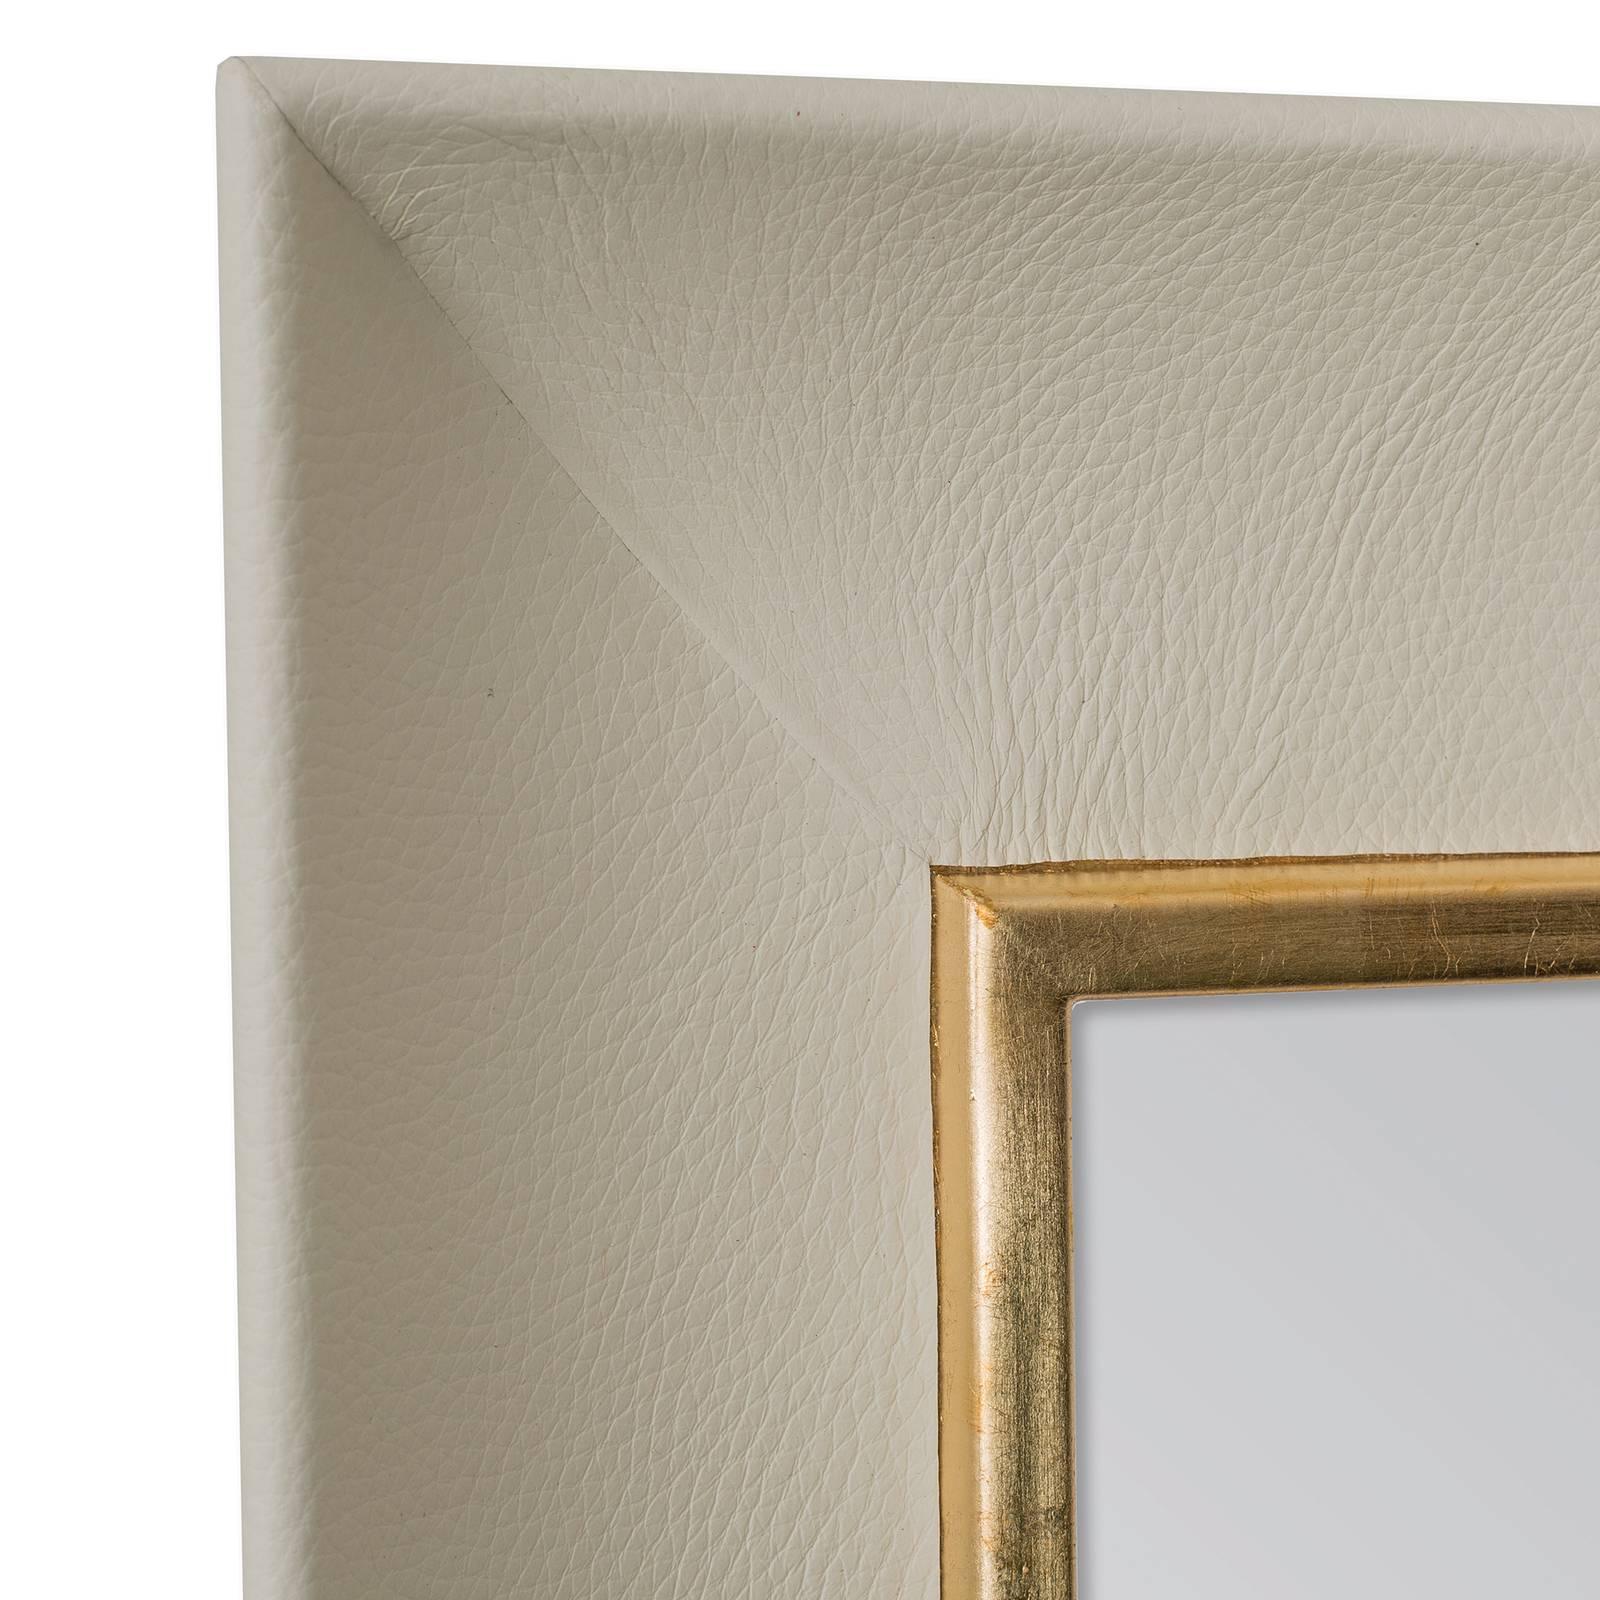 Combinant les différentes textures du métal et du cuir, ce miroir est un accent moderne étonnant pour un salon, une chambre ou une entrée. Son cadre minimaliste est habillé de cuir de grain véritable, fin et souple, dans une couleur blanc cassé